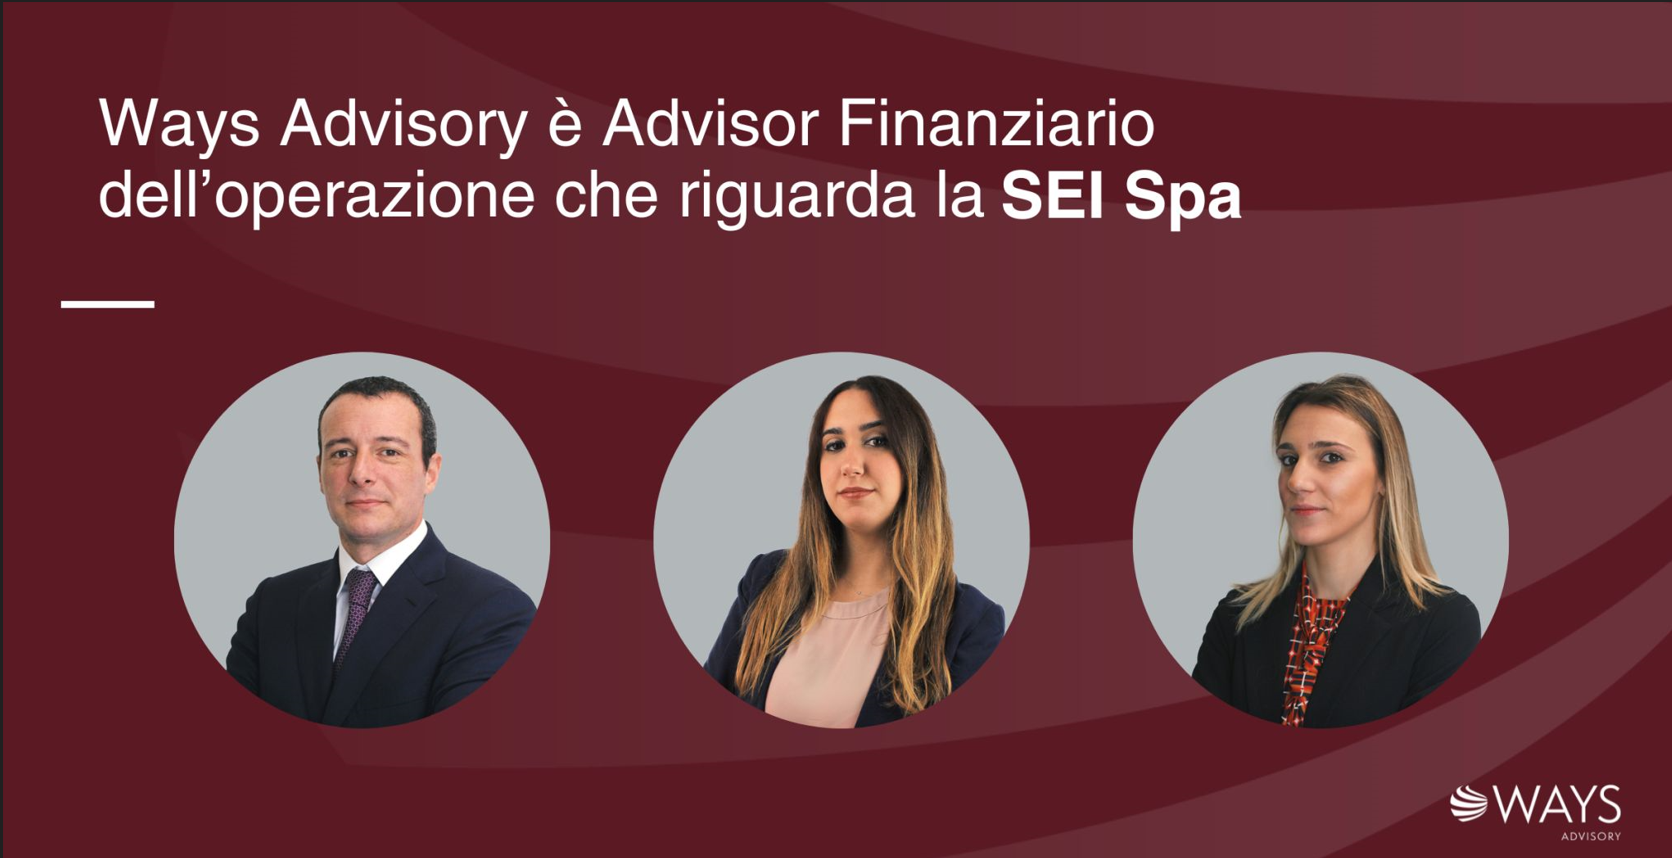 Ways Advisory, ex Fingiaco, è Advisor Finanziario dell’operazione che riguarda SEI Spa, in coordinamento con lo Studio BCL Lex